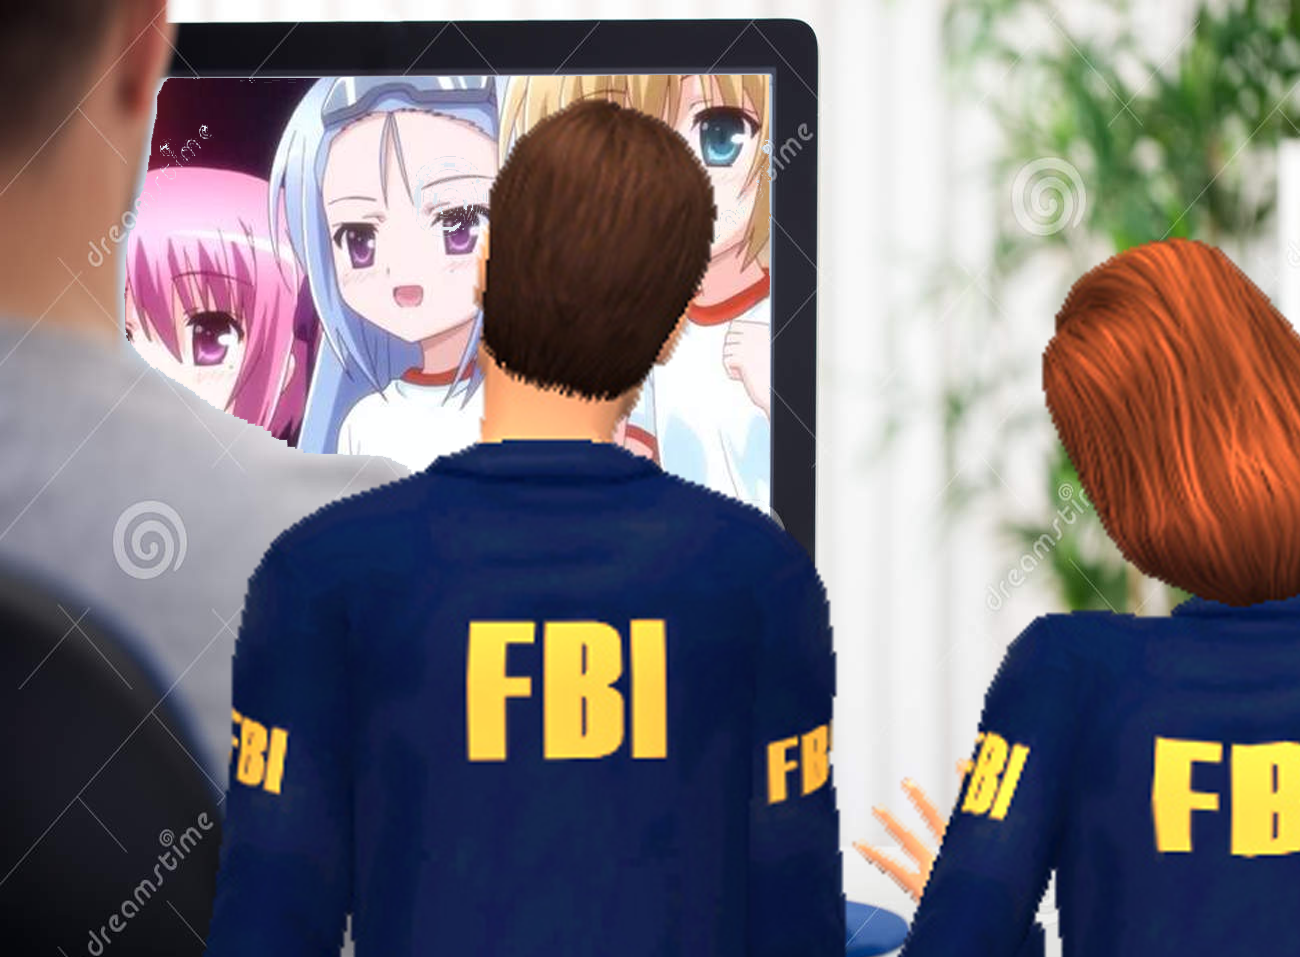 FBI Catching the notorious pedophile SeniorTacos, 2017